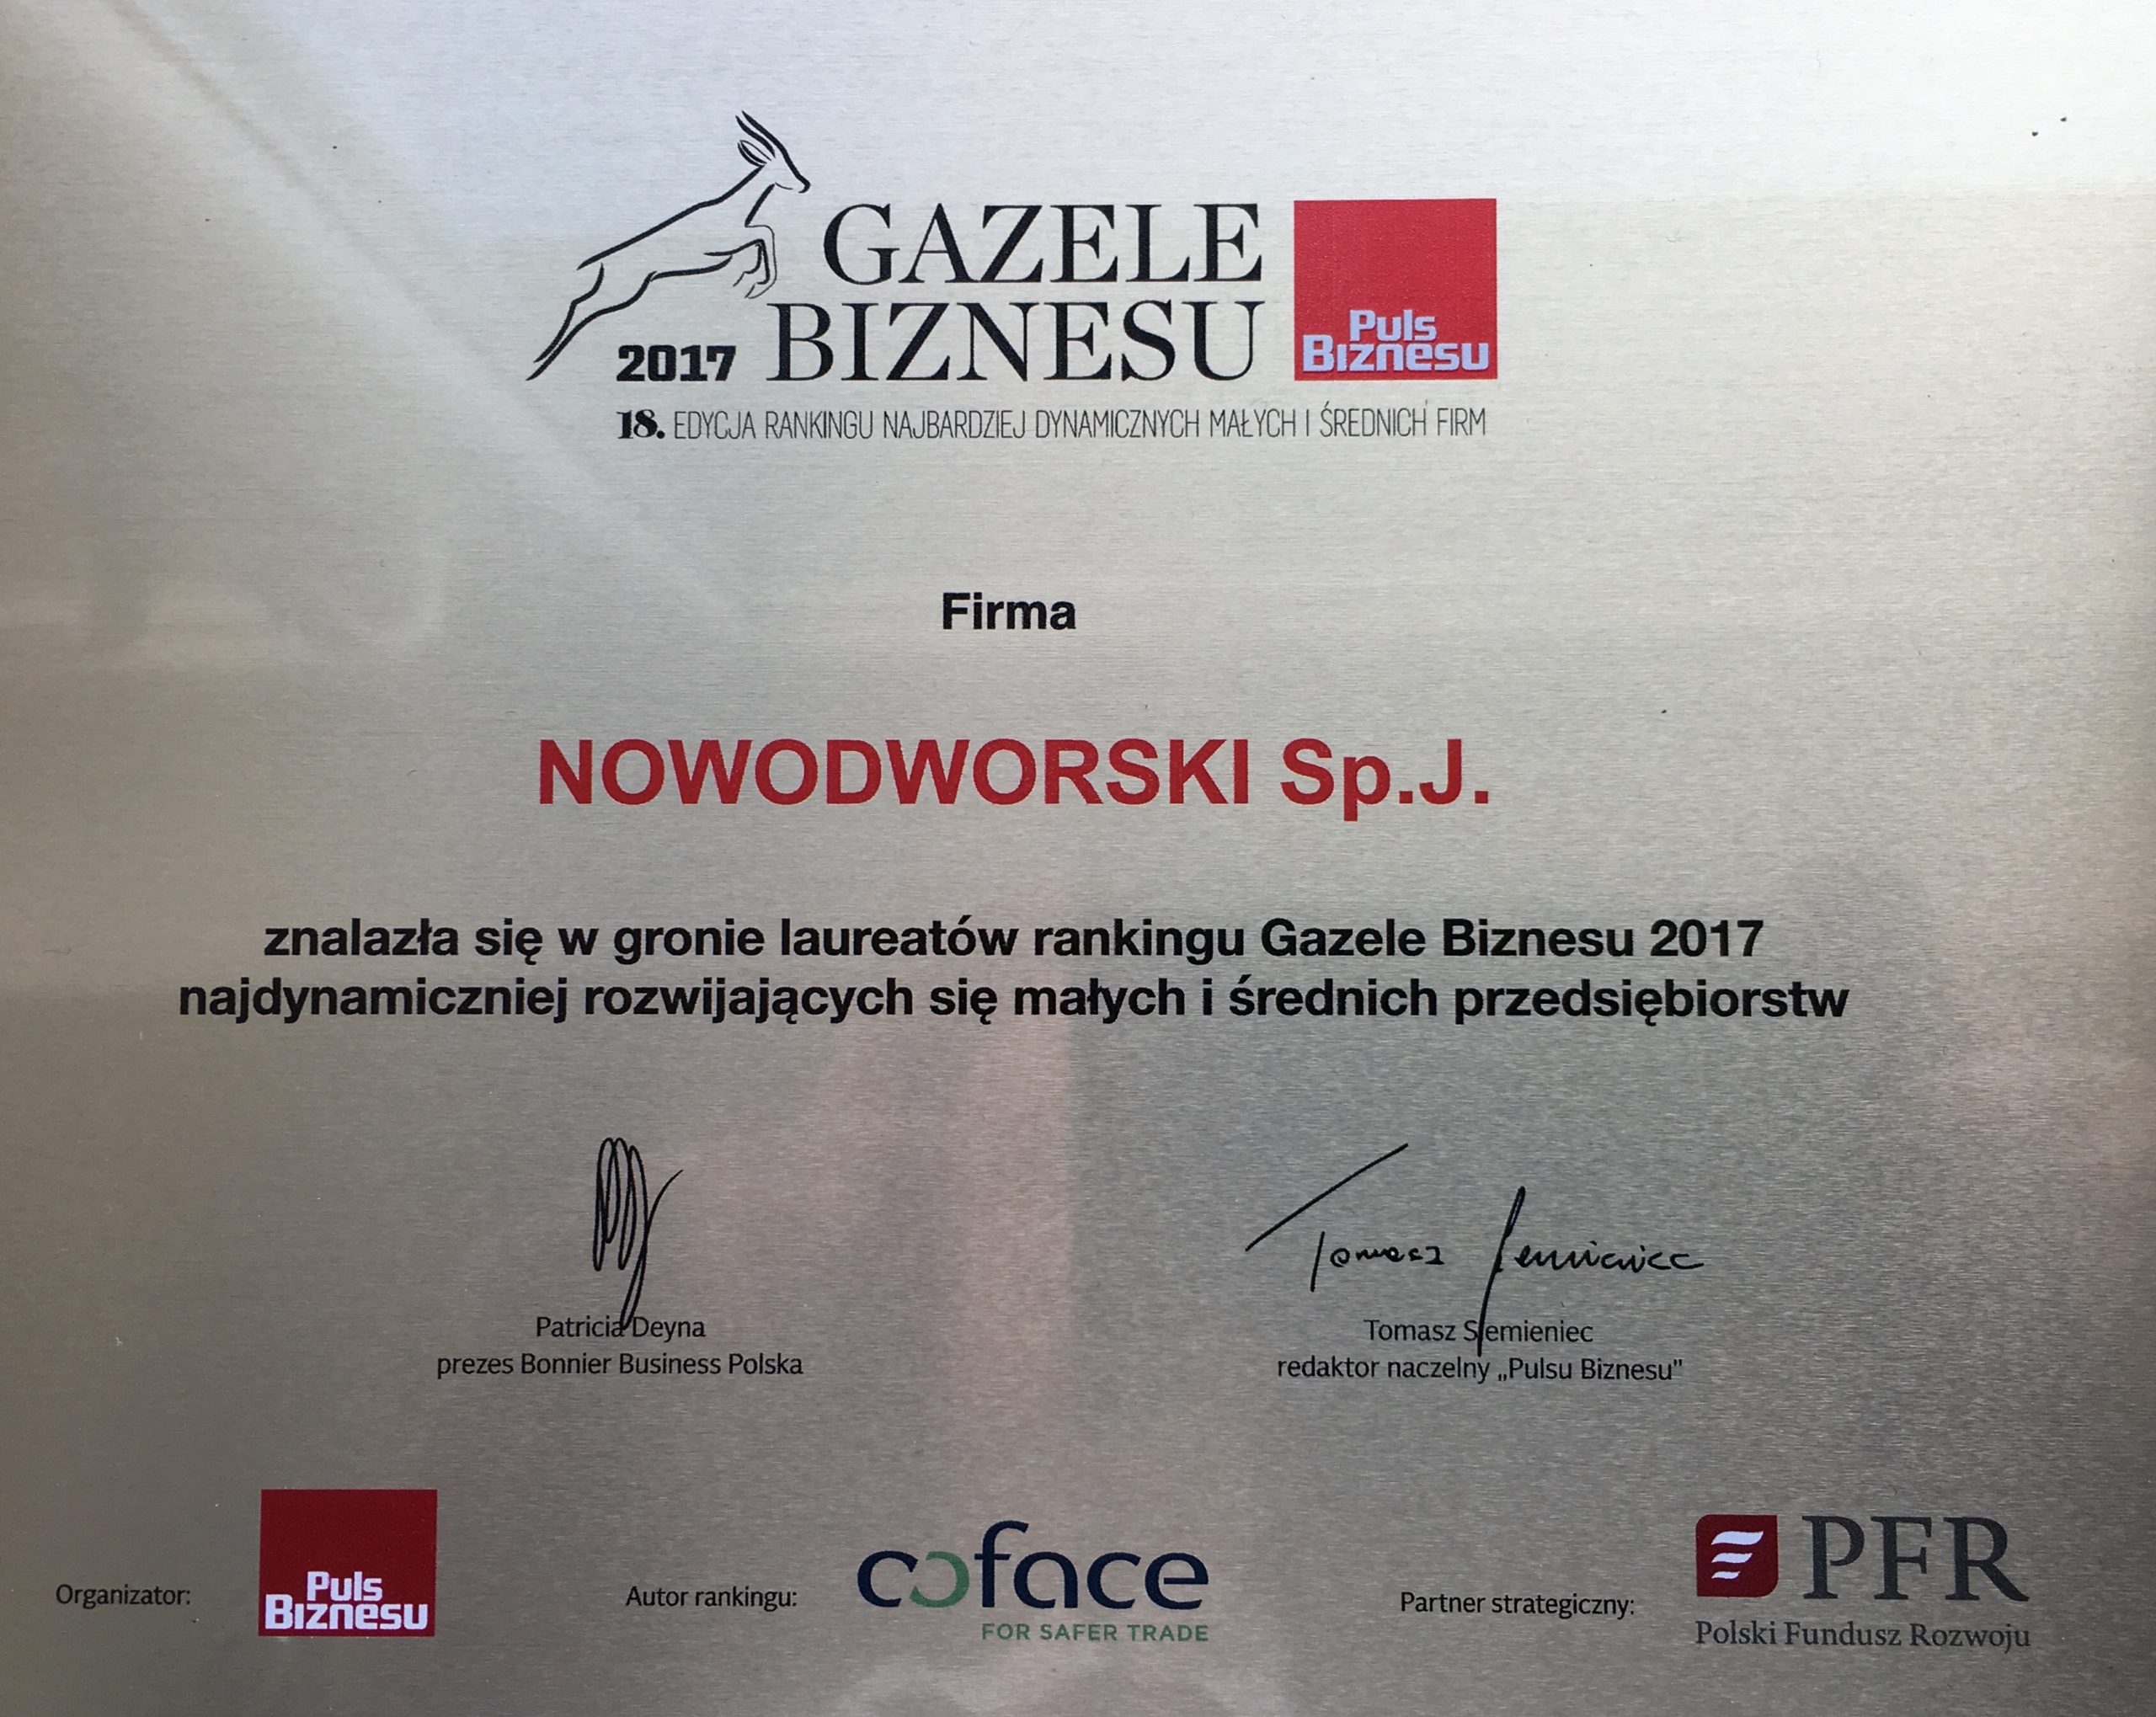 Nowodworski Sp. j. z tytułem Gazeli Biznesu 2017 , Nowodvorski - Firma Nowodworski Sp. j, producent dekoracyjnych opraw oświetleniowych, po raz kolejny udowodniła, że znajduje się w czołówce najdynamiczniej rozwijających się przedsiębiorstw w Polsce. Spółka znalazła się właśnie w gronie laureatów 18 edycji rankingu Gazele Biznesu 2017, organizowanego przez Puls Biznesu.